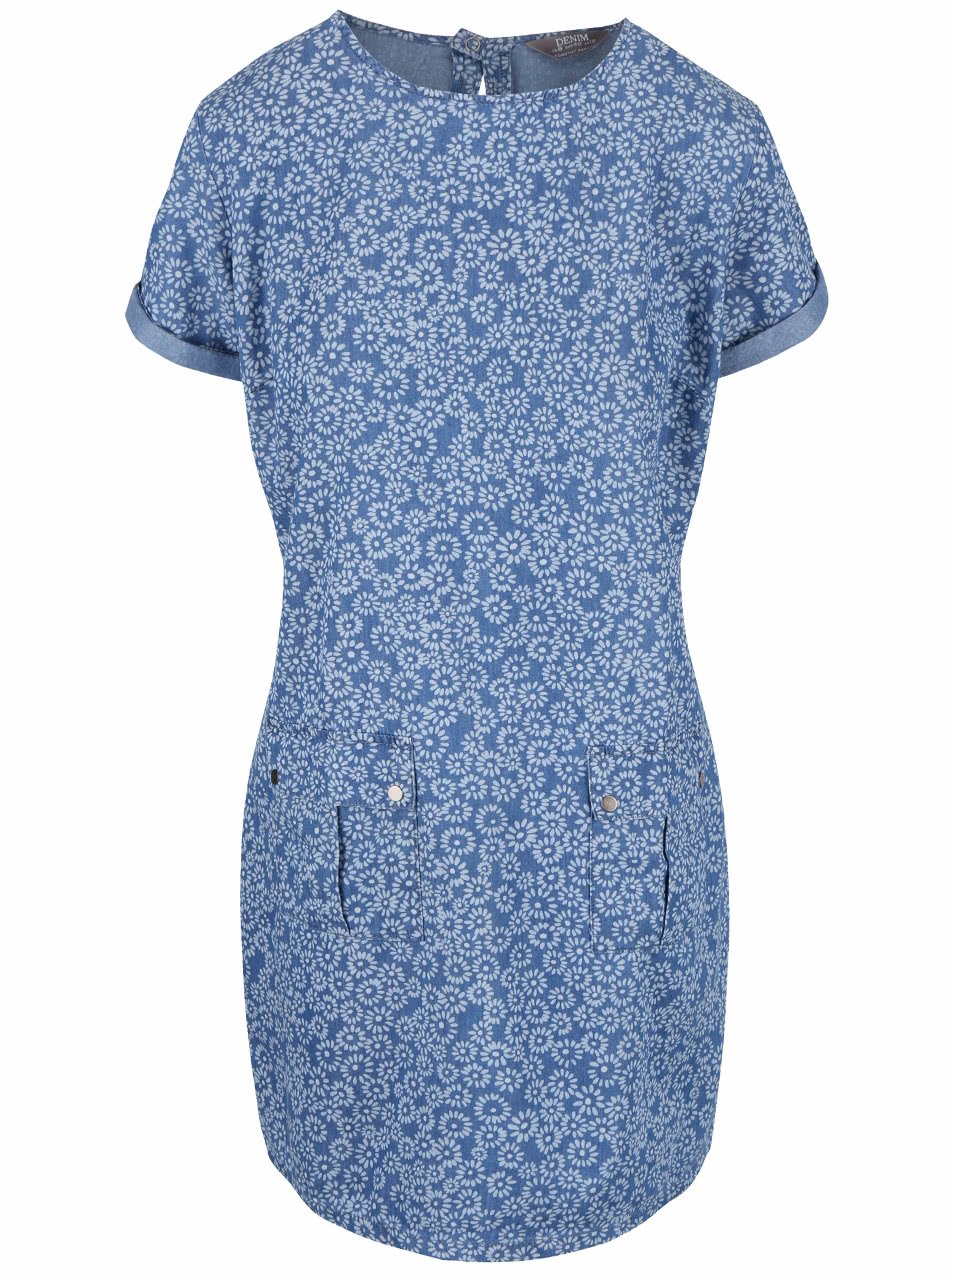 Modré vzorované denimové šaty s kapsami Dorothy Perkins